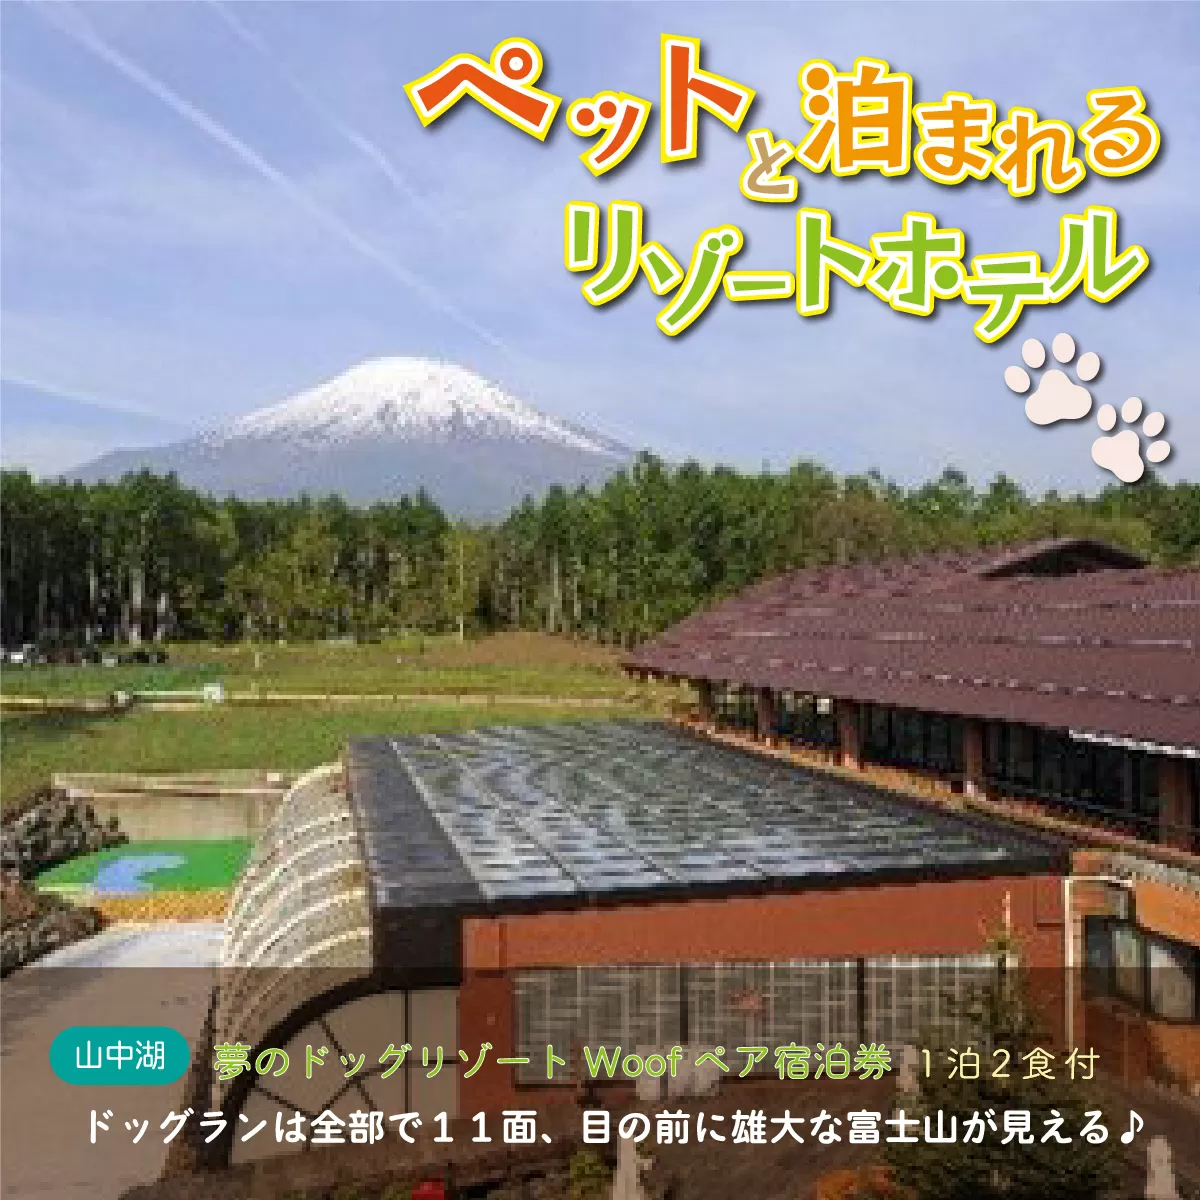 夢のドッグリゾートWoof 3F富士山ビューペア宿泊券 YN003